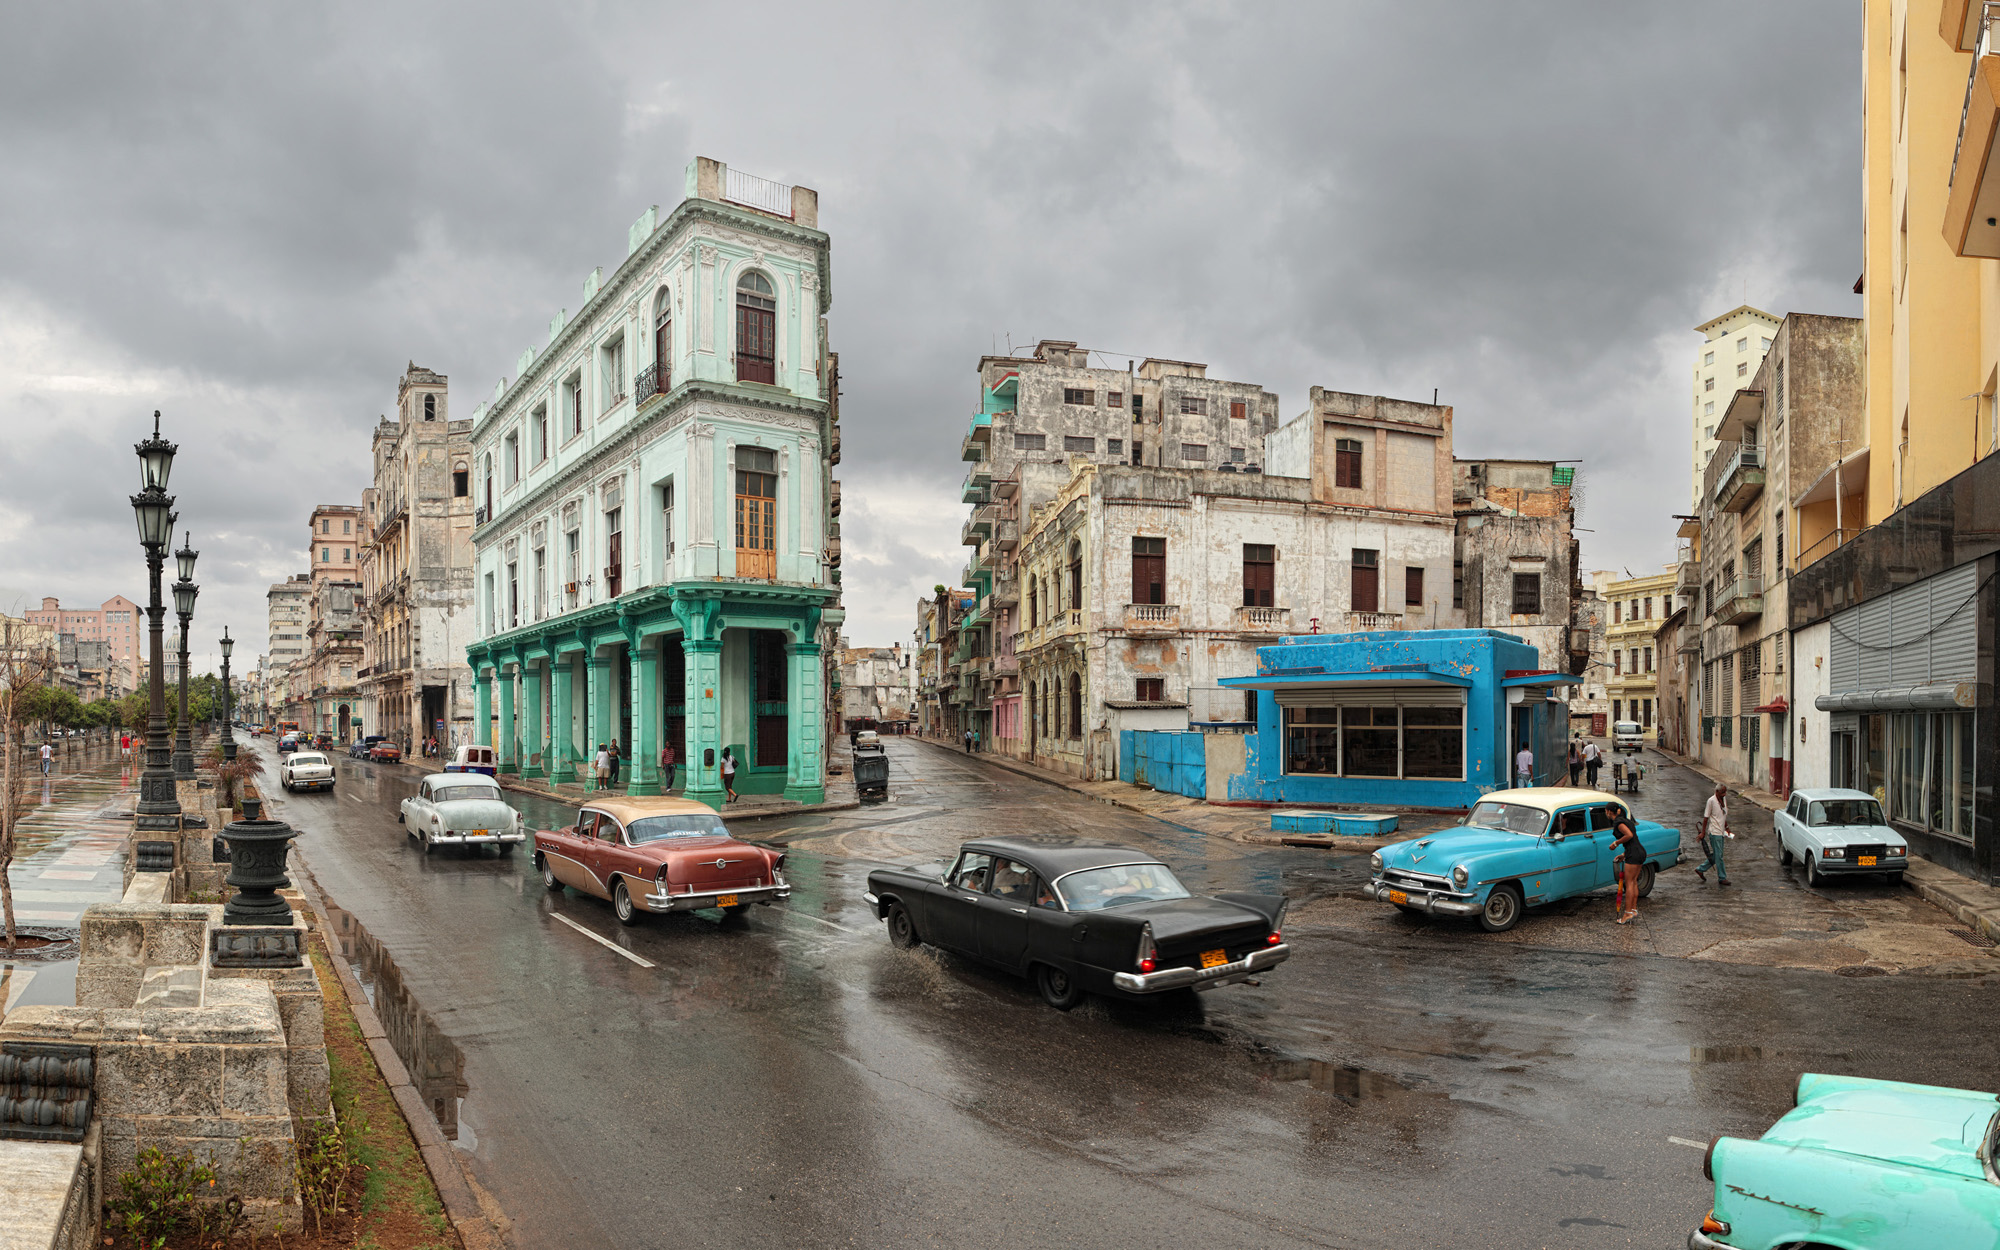 Paseo del Prado - Havana, Cuba 2010